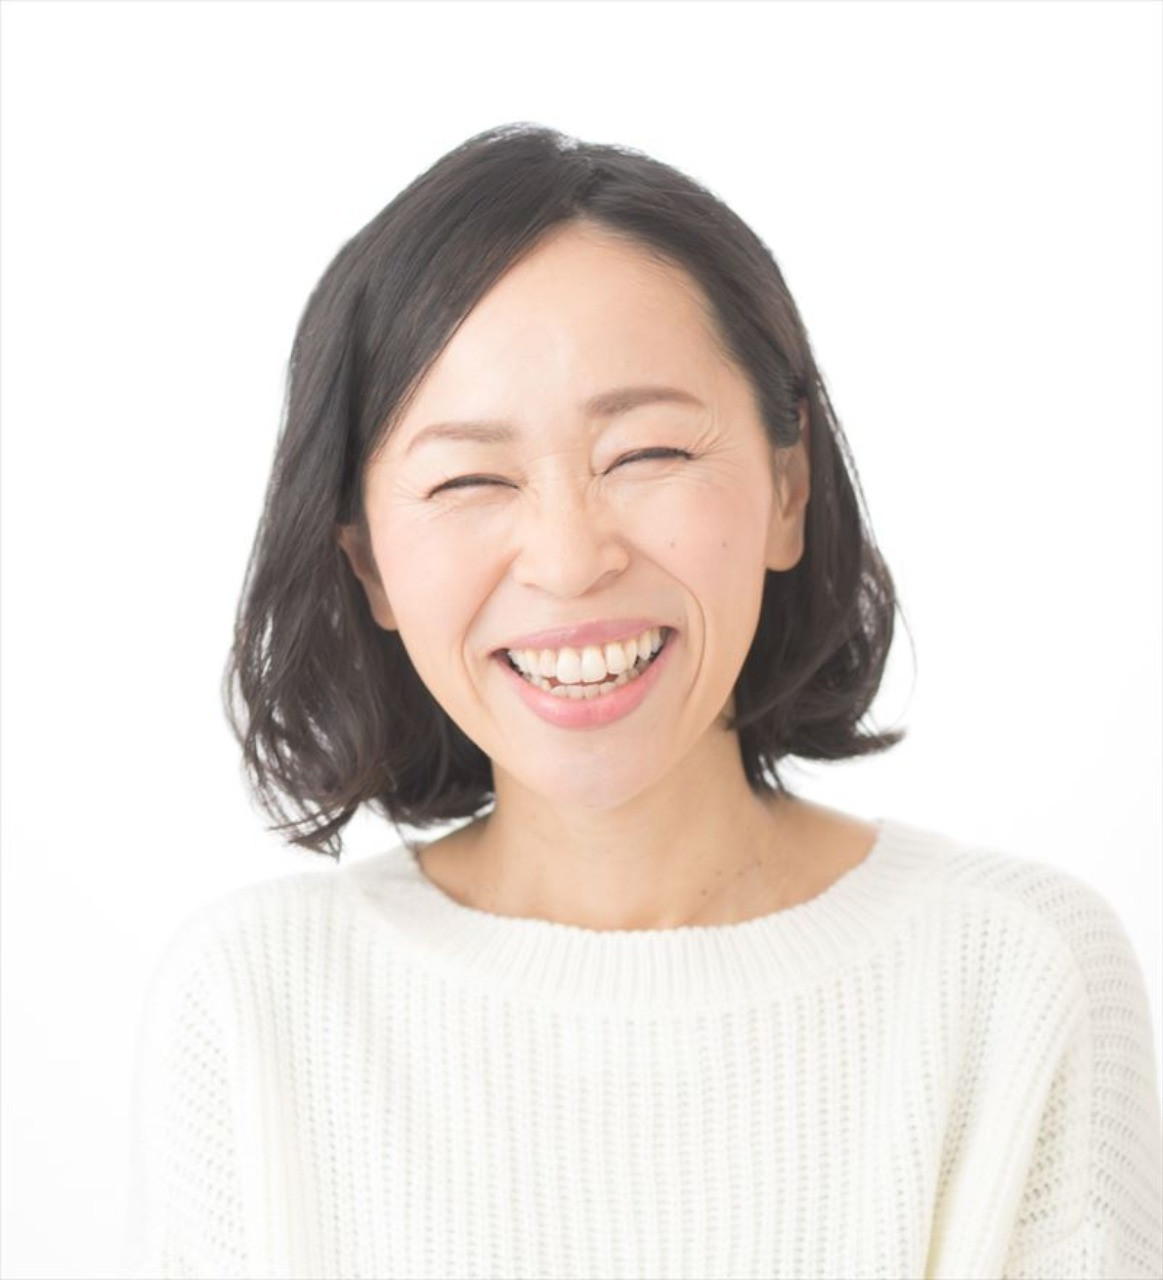 当研究所代表である松本真紀子氏の笑顔の写真